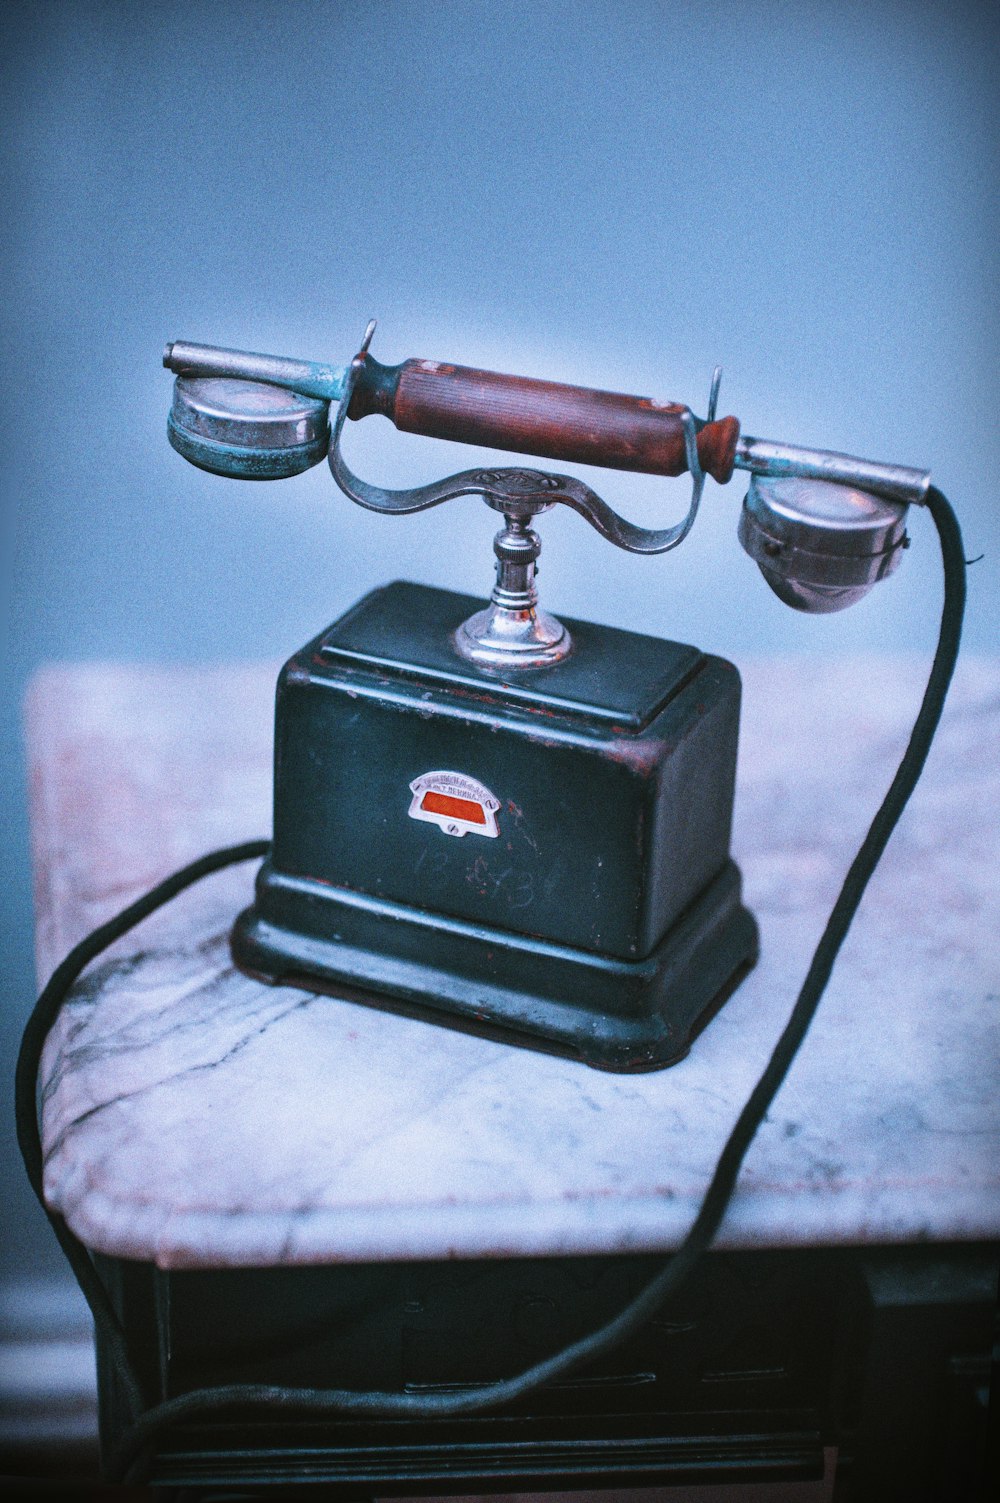 Vintage-Telefon in Blau und Braun auf beiger Oberfläche